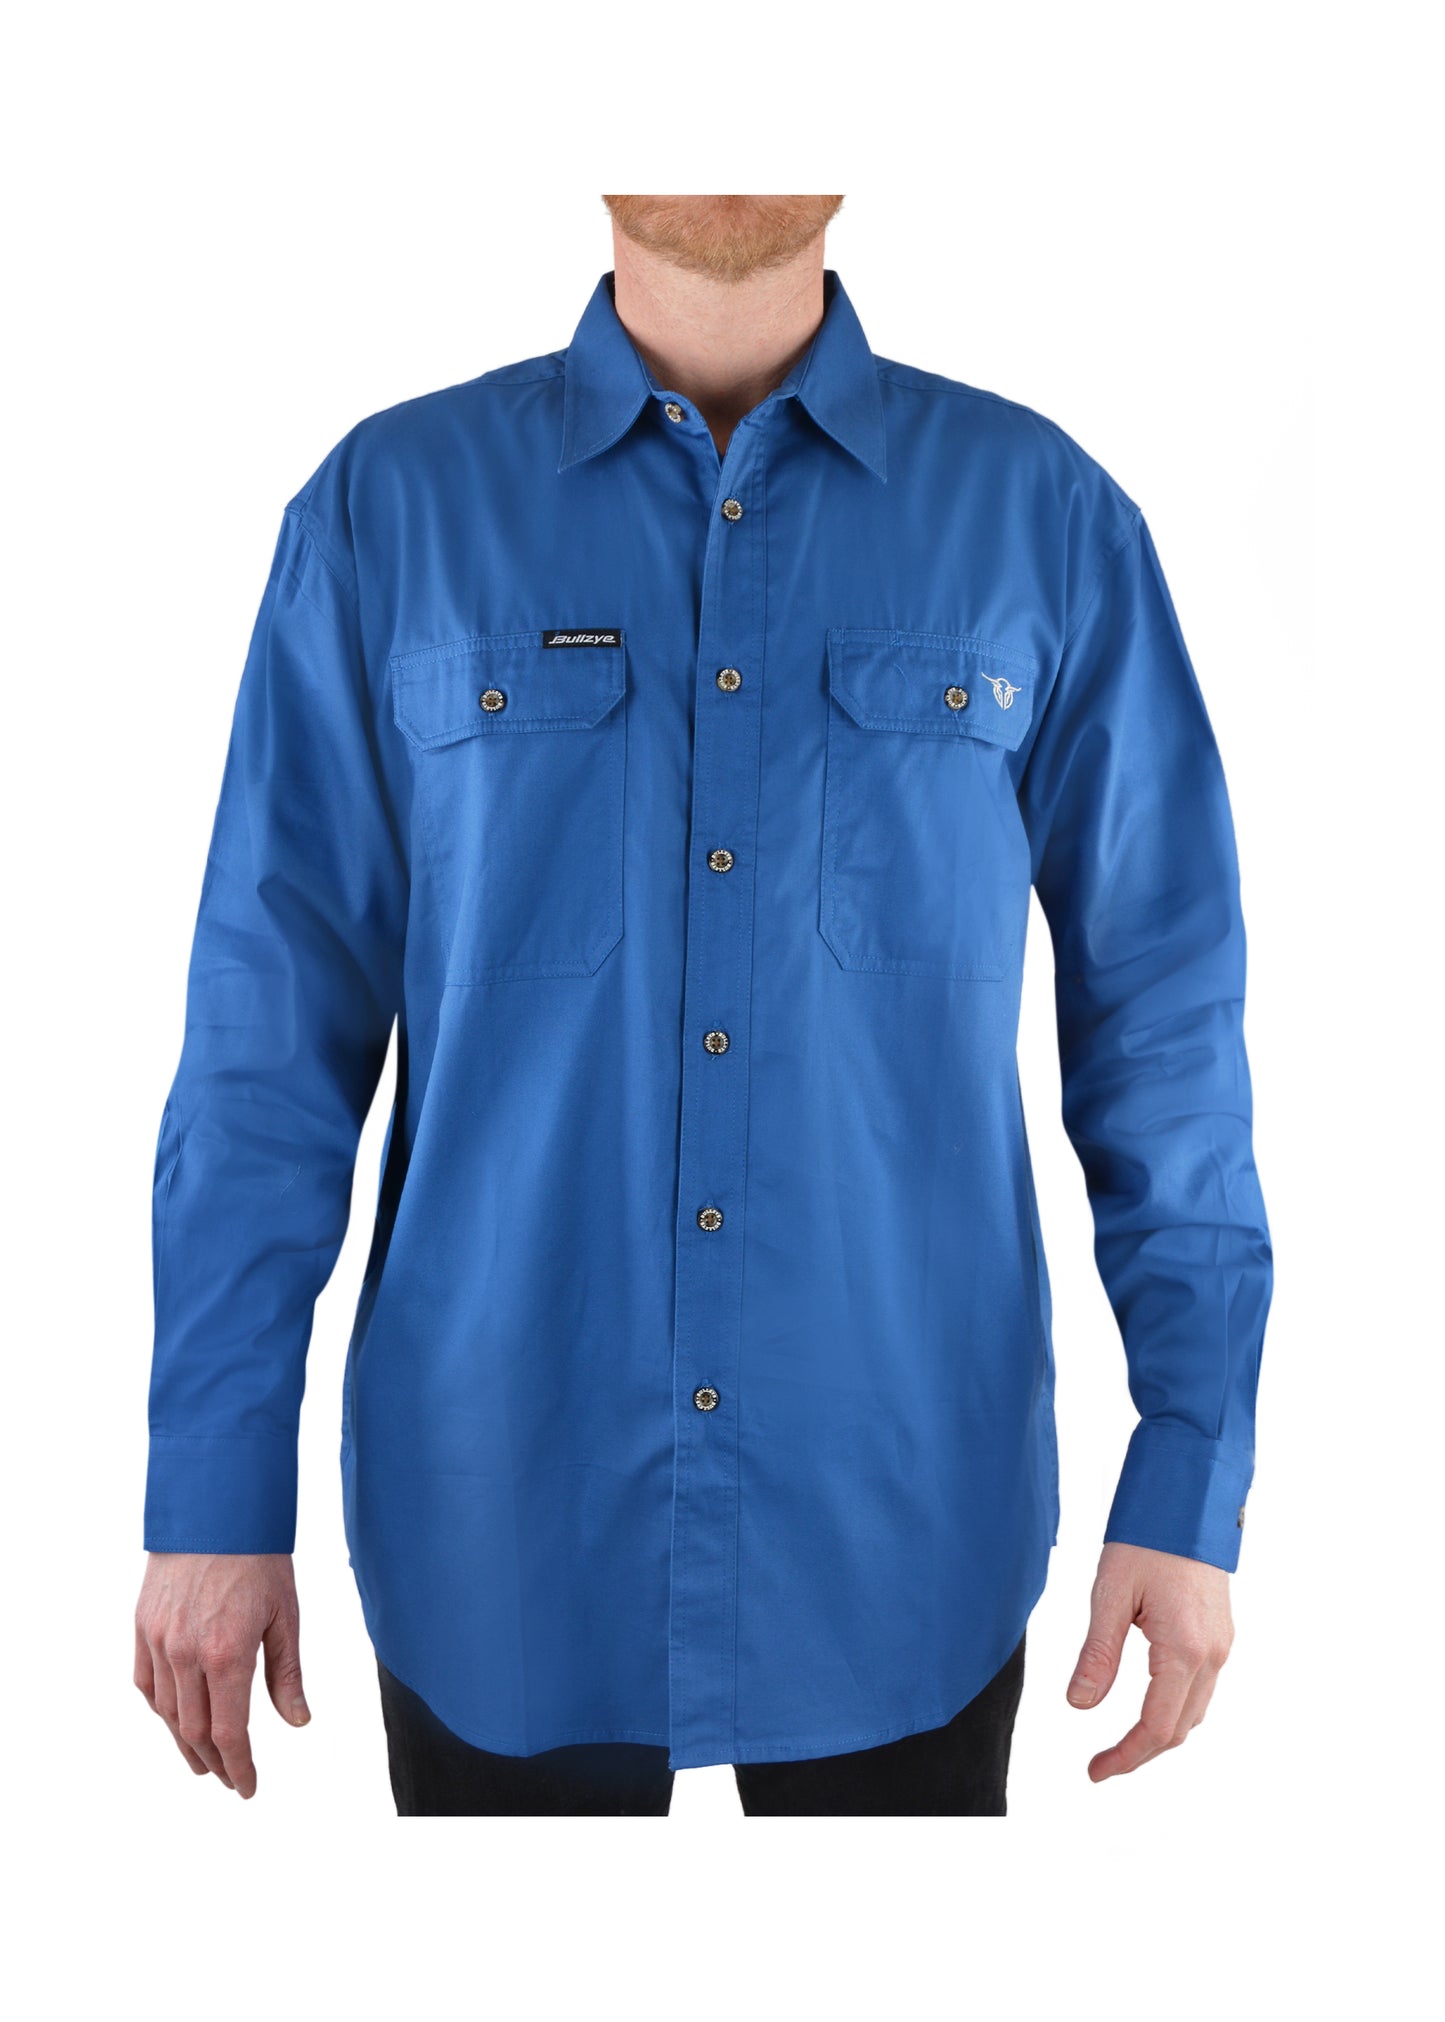 Bullzye Mens Full Placket Work Shirt - Cobalt - B1S1102120 - ON SALE